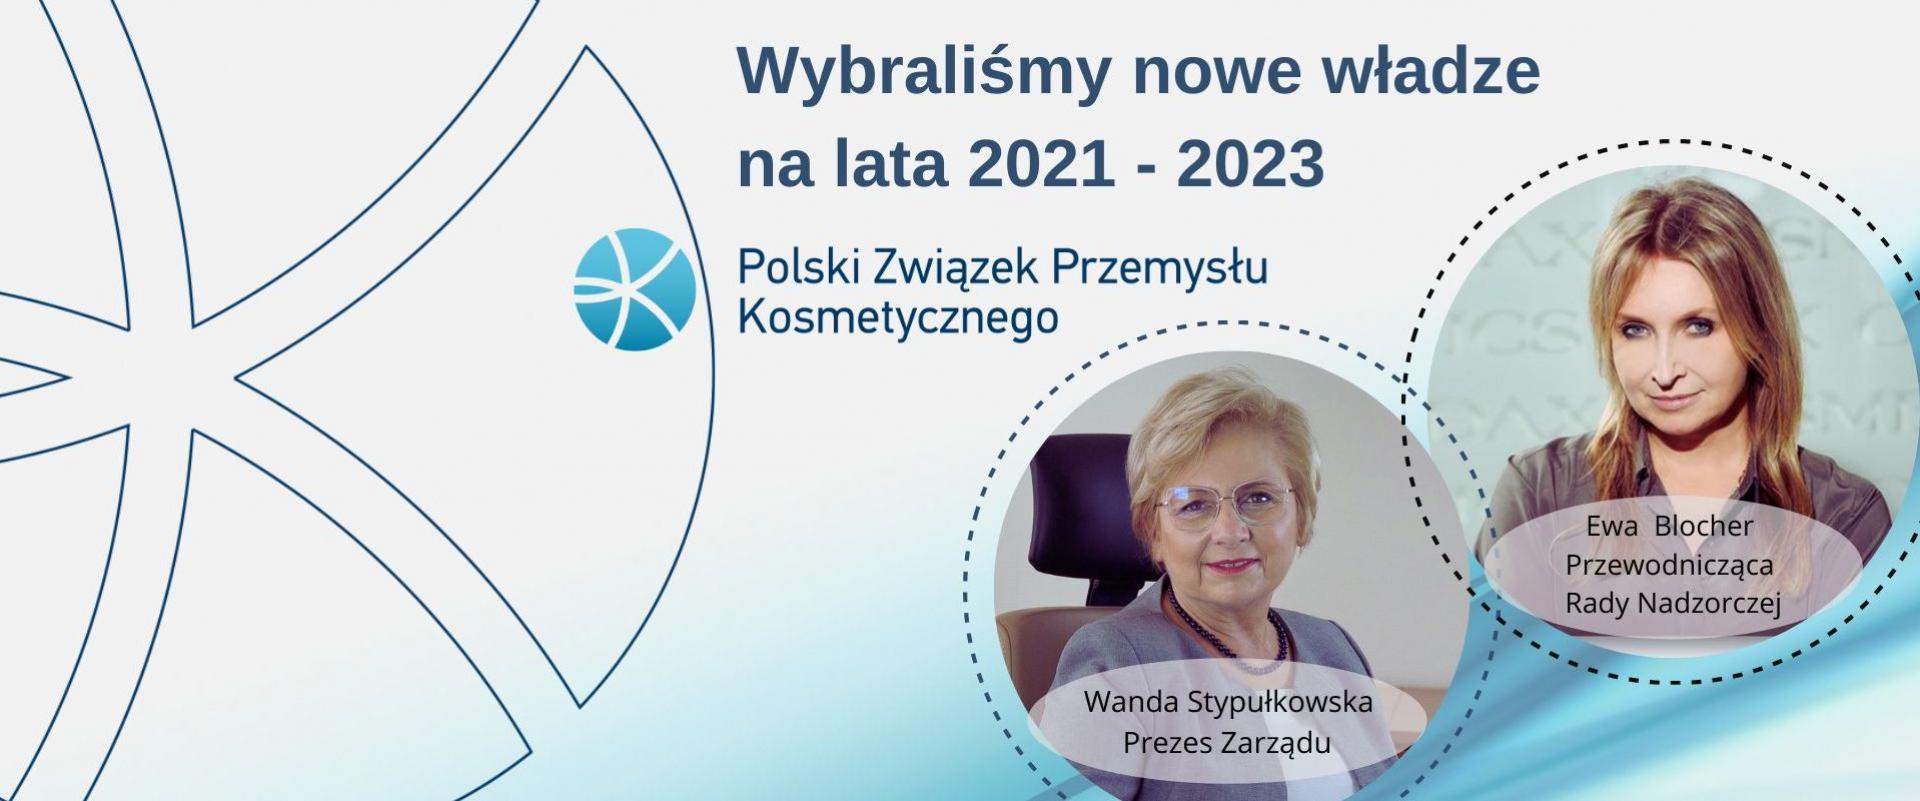 Polski Związek Przemysłu Kosmetycznego podsumował 3 ostatnie lata działalności i wybrał władze na kolejną kadencję